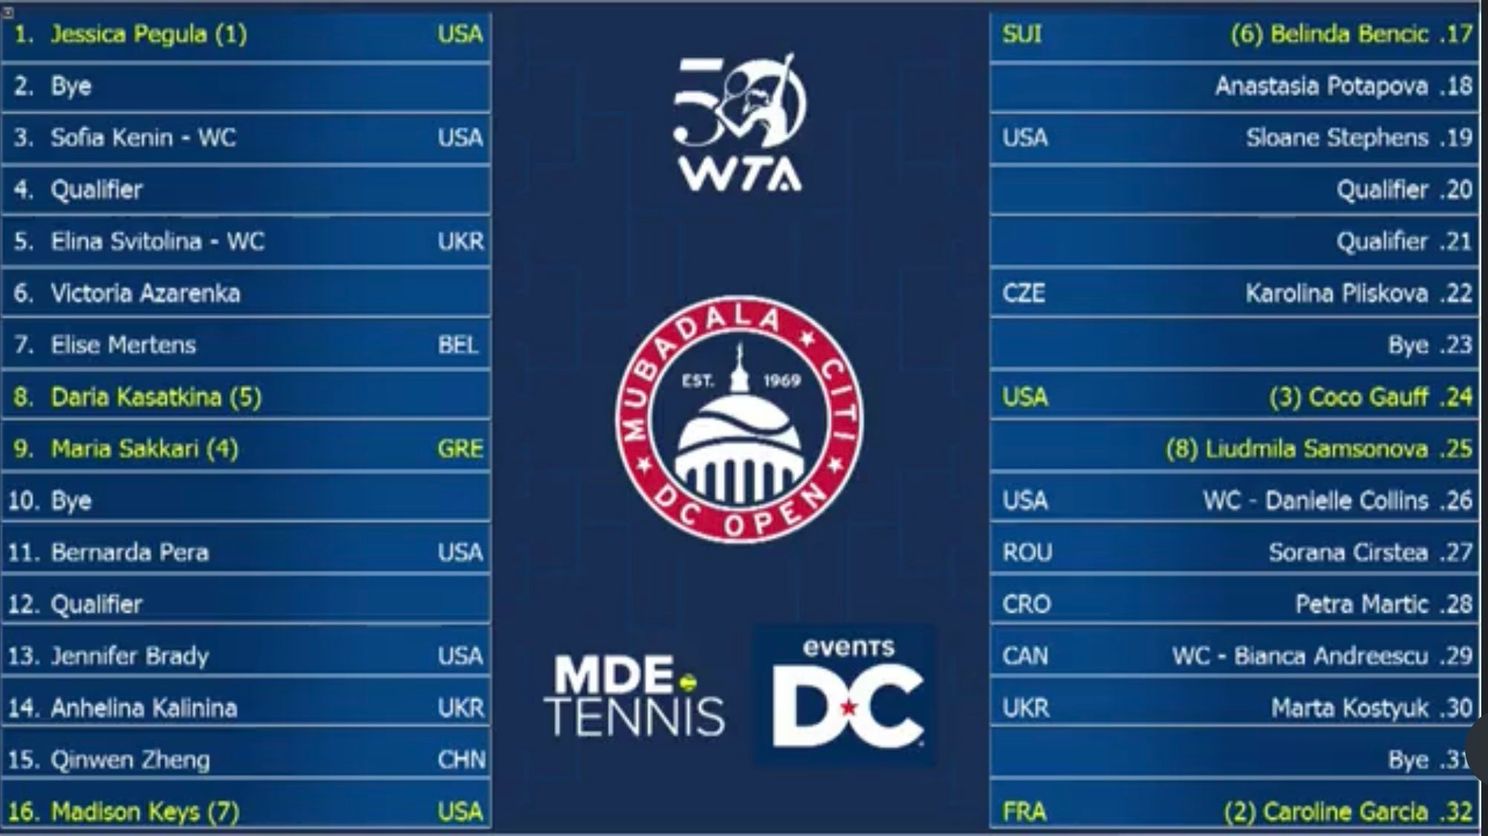 2023 DC Open WTA Draw featuring Pegula, Garcia, Gauff, Sakkari, Kasatkina